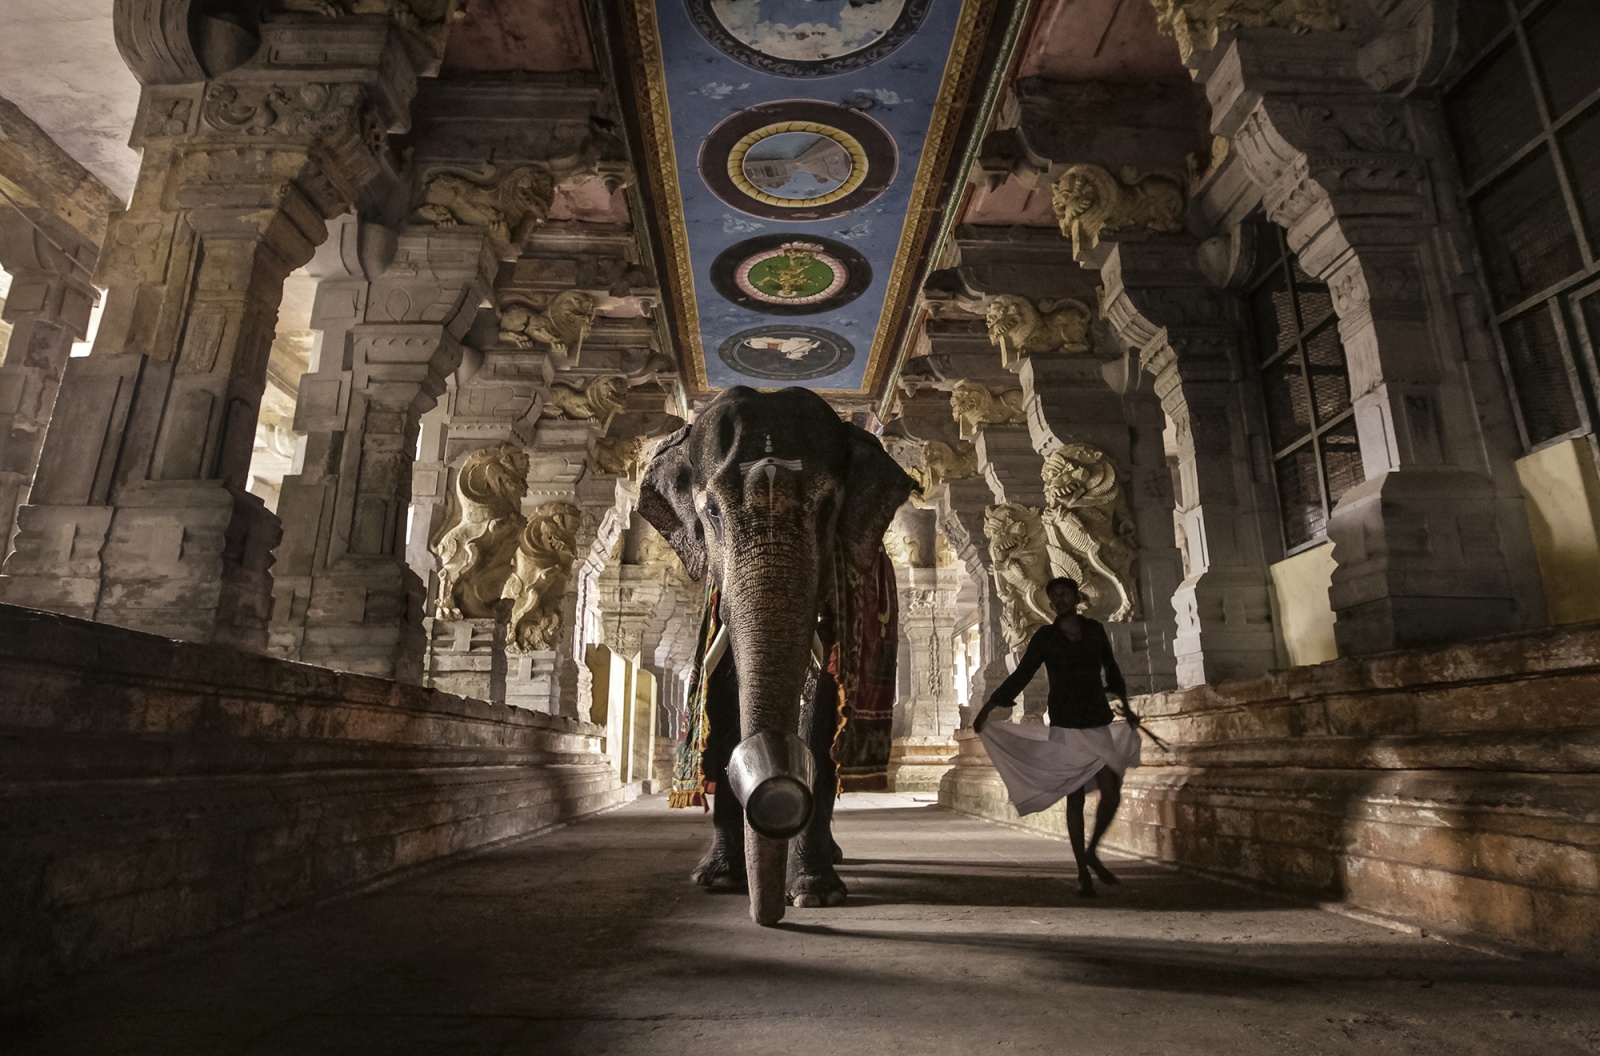 Colors of India | Bruno Tamiozzo - Un elefante, viene accompagnato all’interno dell’antico tempio di Rameshwaram, Tamil Nadu, 2012. © Bruno Tamiozzo.
 
